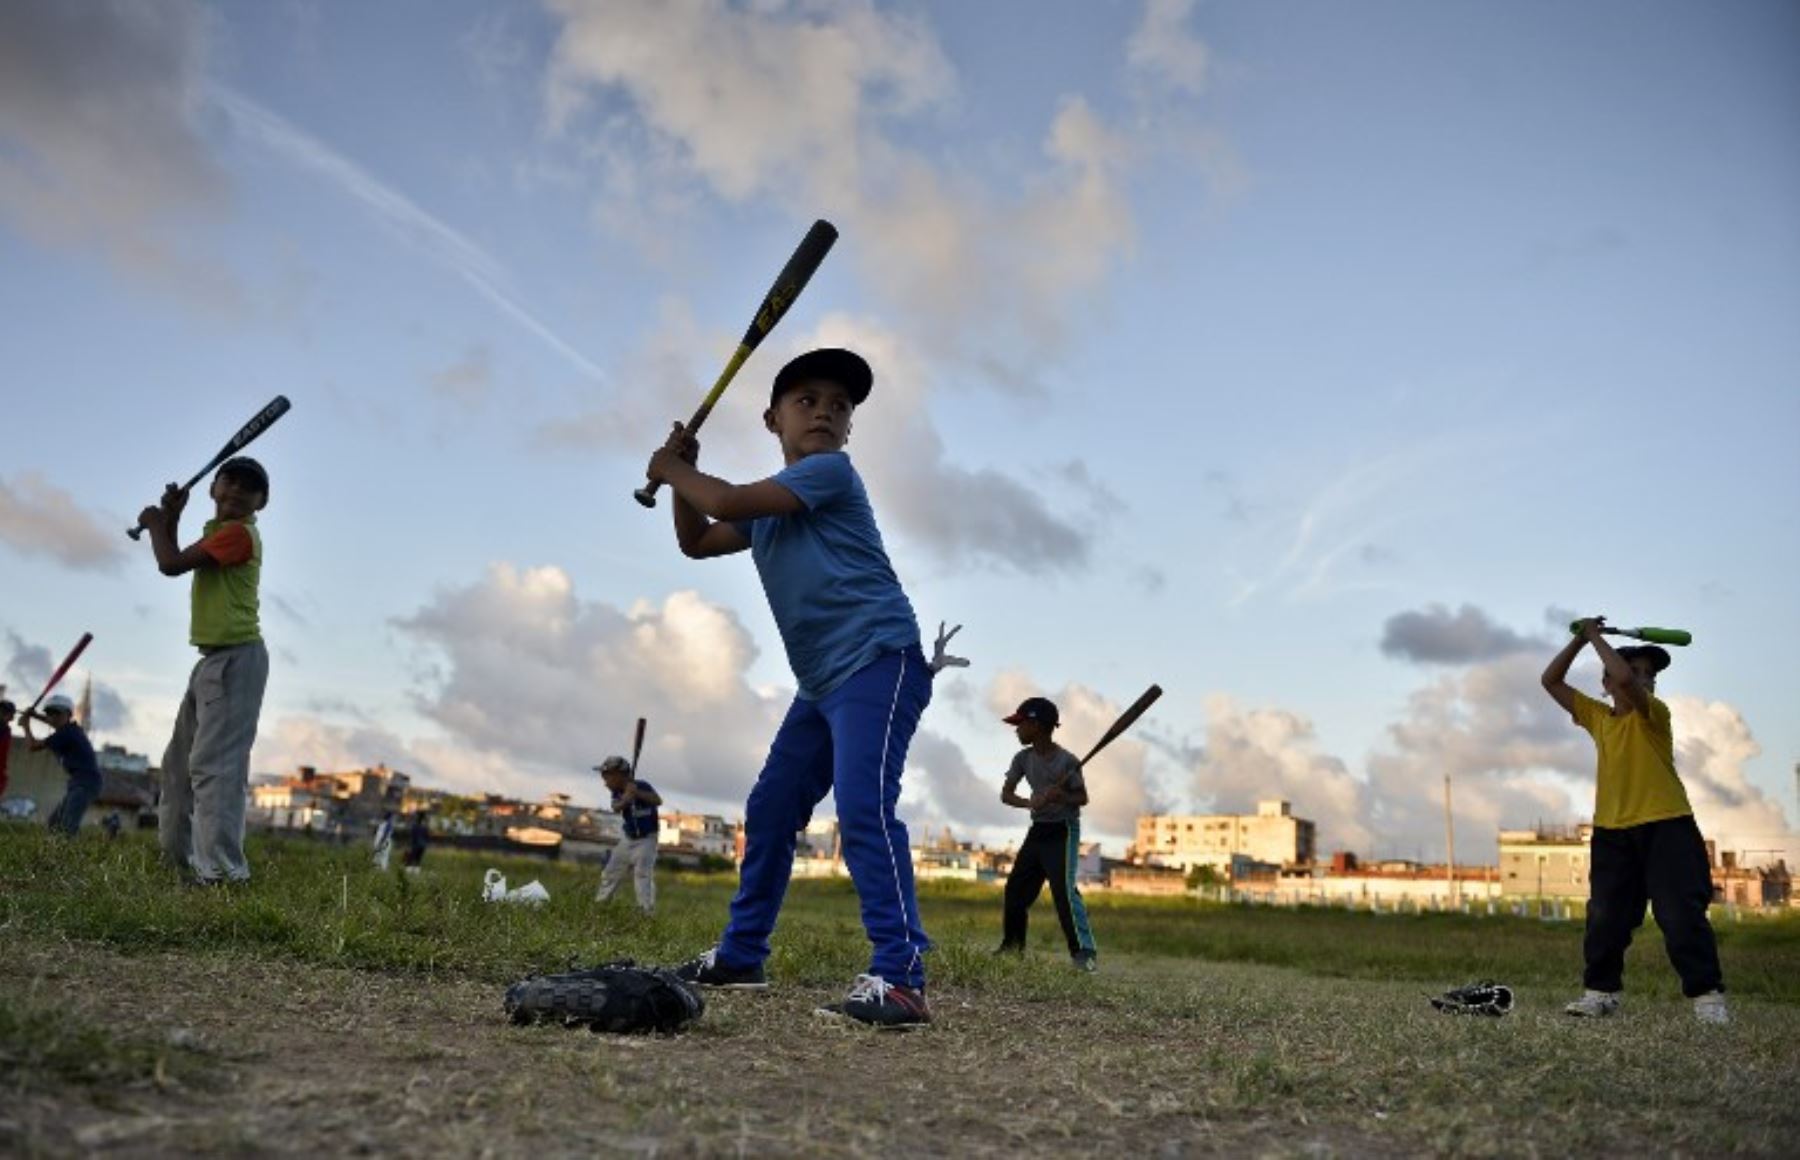 El béisbol es el deporte bandera de los cubanos, pero el fútbol llegó para darle pelea